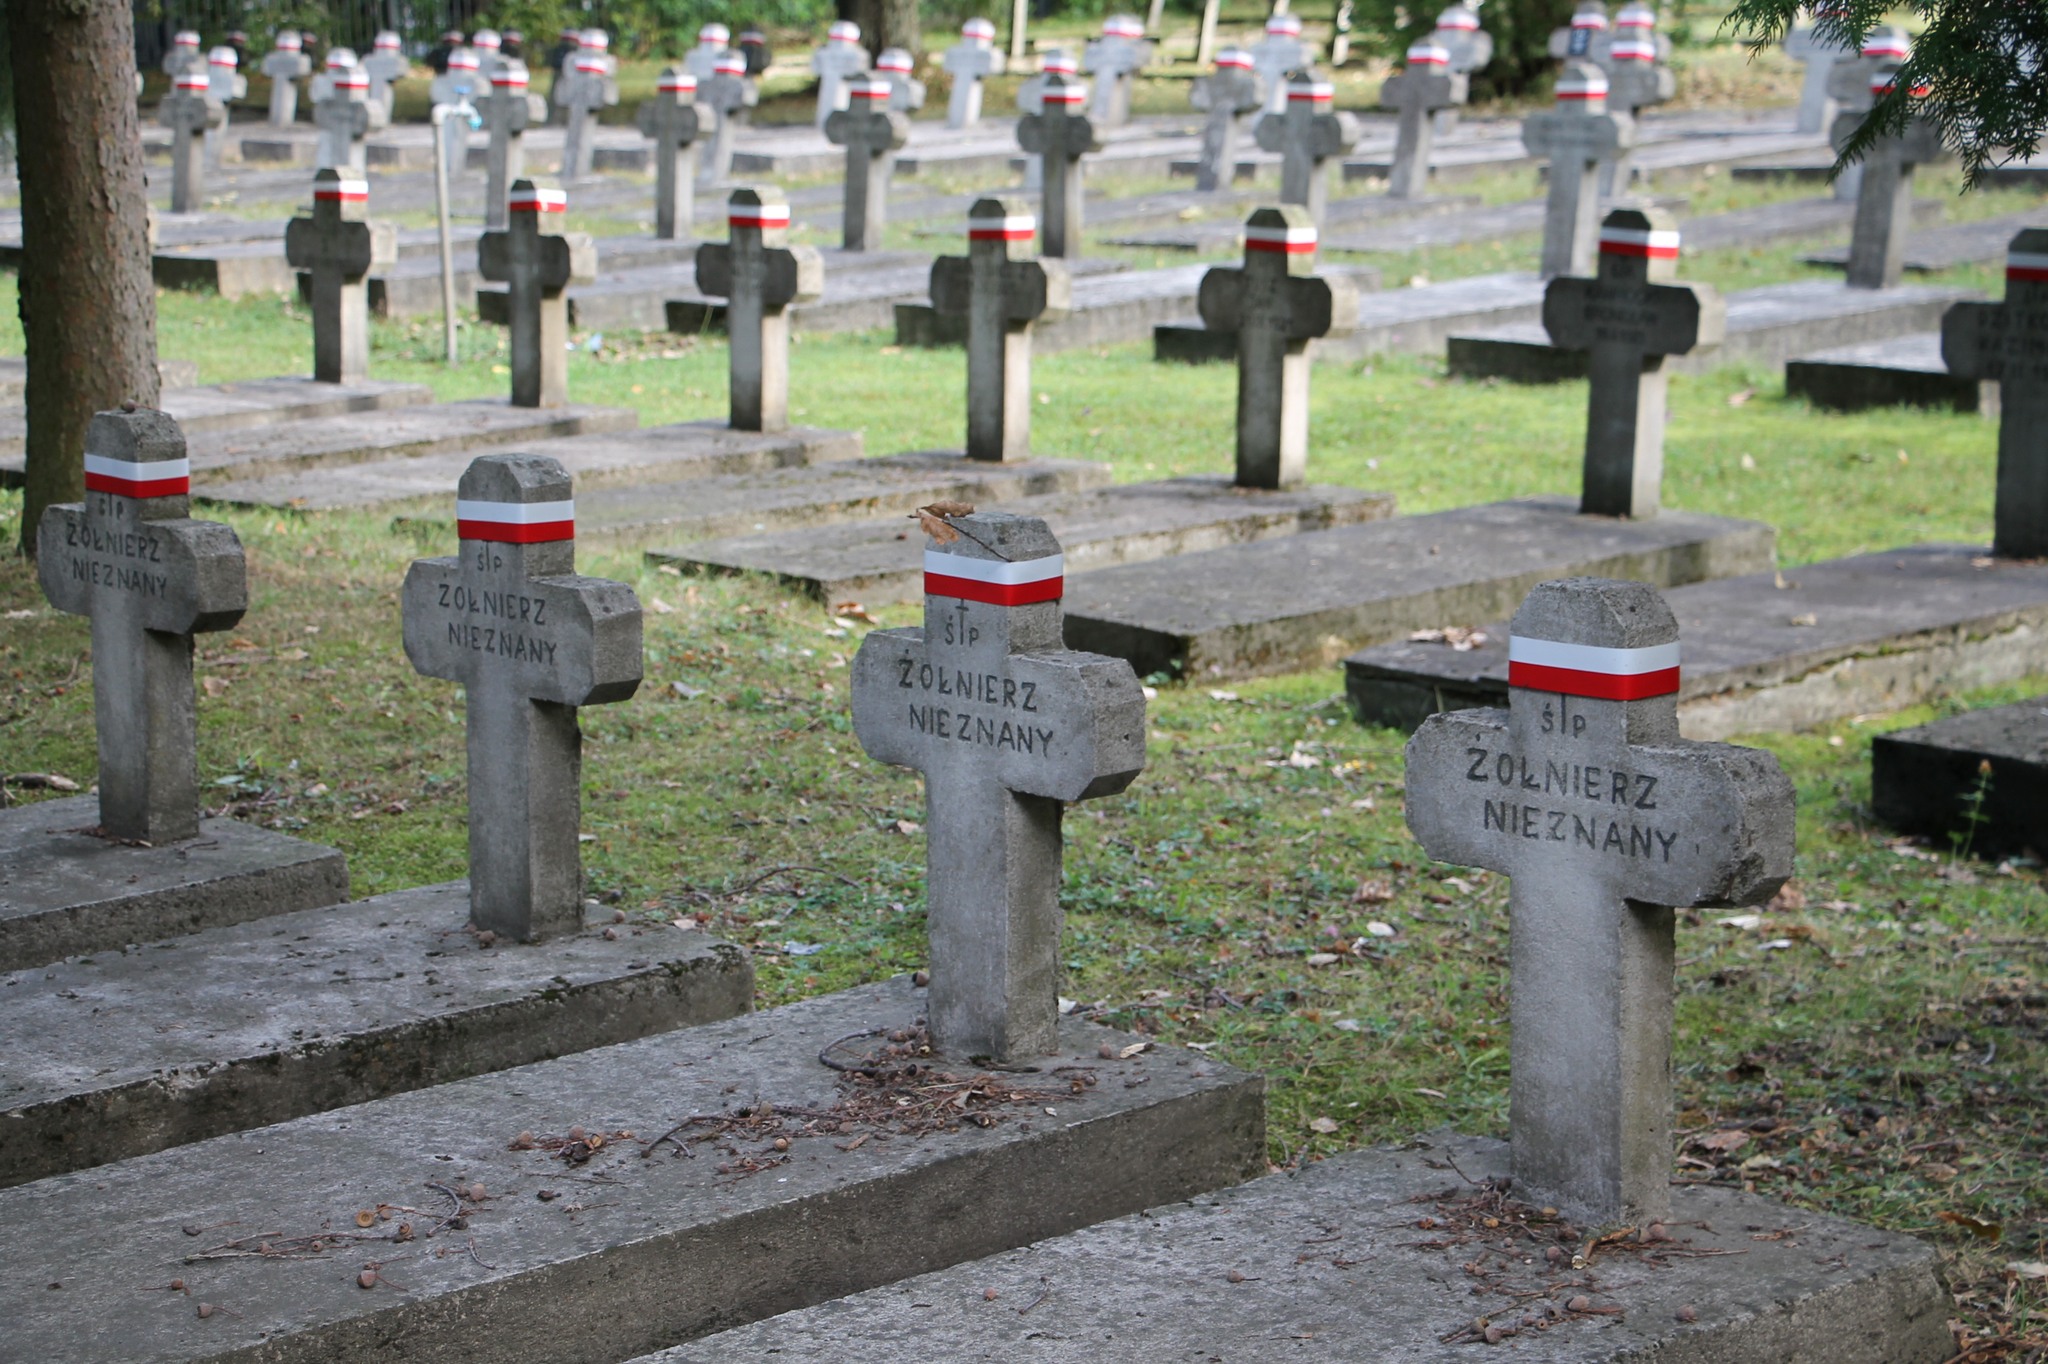 Cmentarz wojskowy - groby nieznanych żołnierzy
